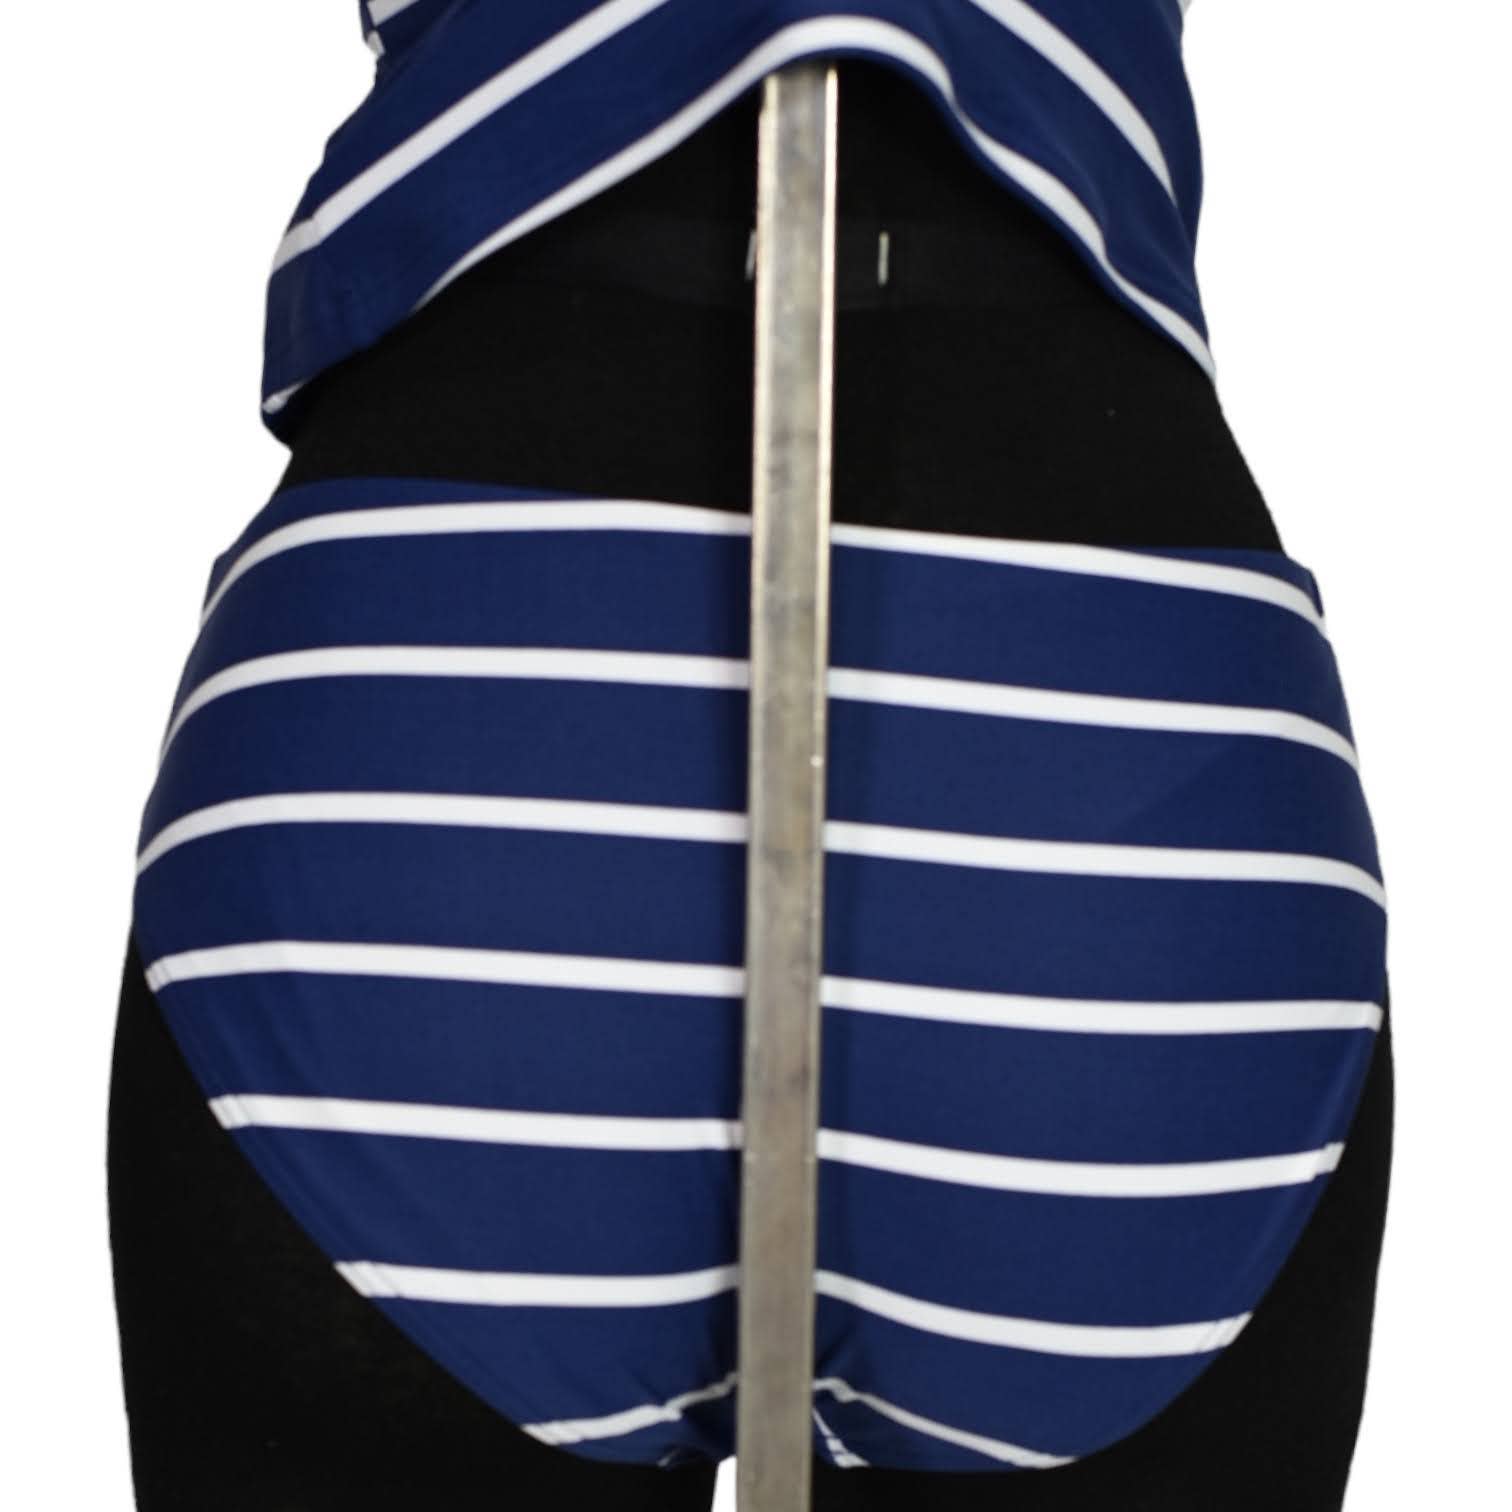 Niptuck Swim Tankini Set Striped Twist Front Tummy Control Multi Cup Fit Size 6